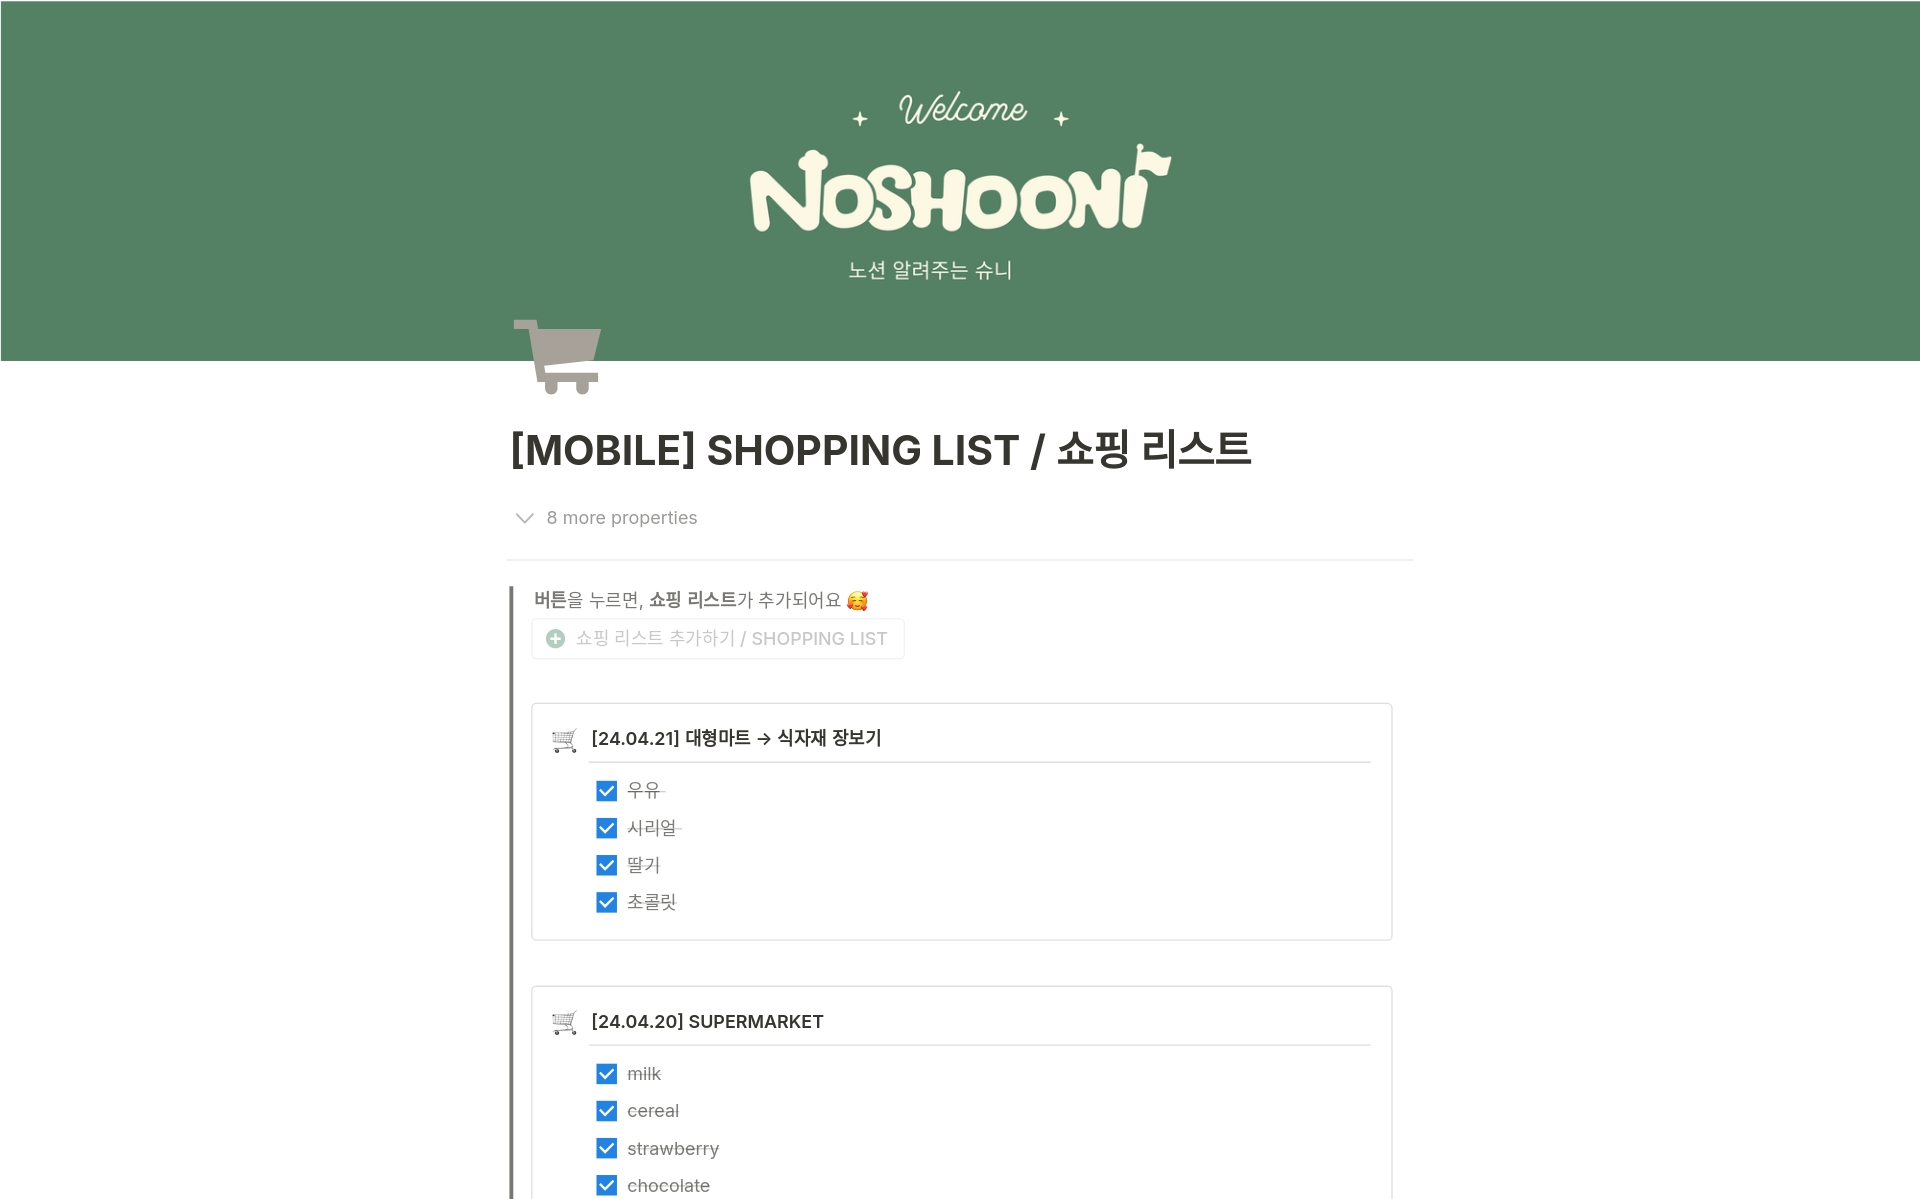 Uma prévia do modelo para [Mobile] Shopping List / 쇼핑 리스트